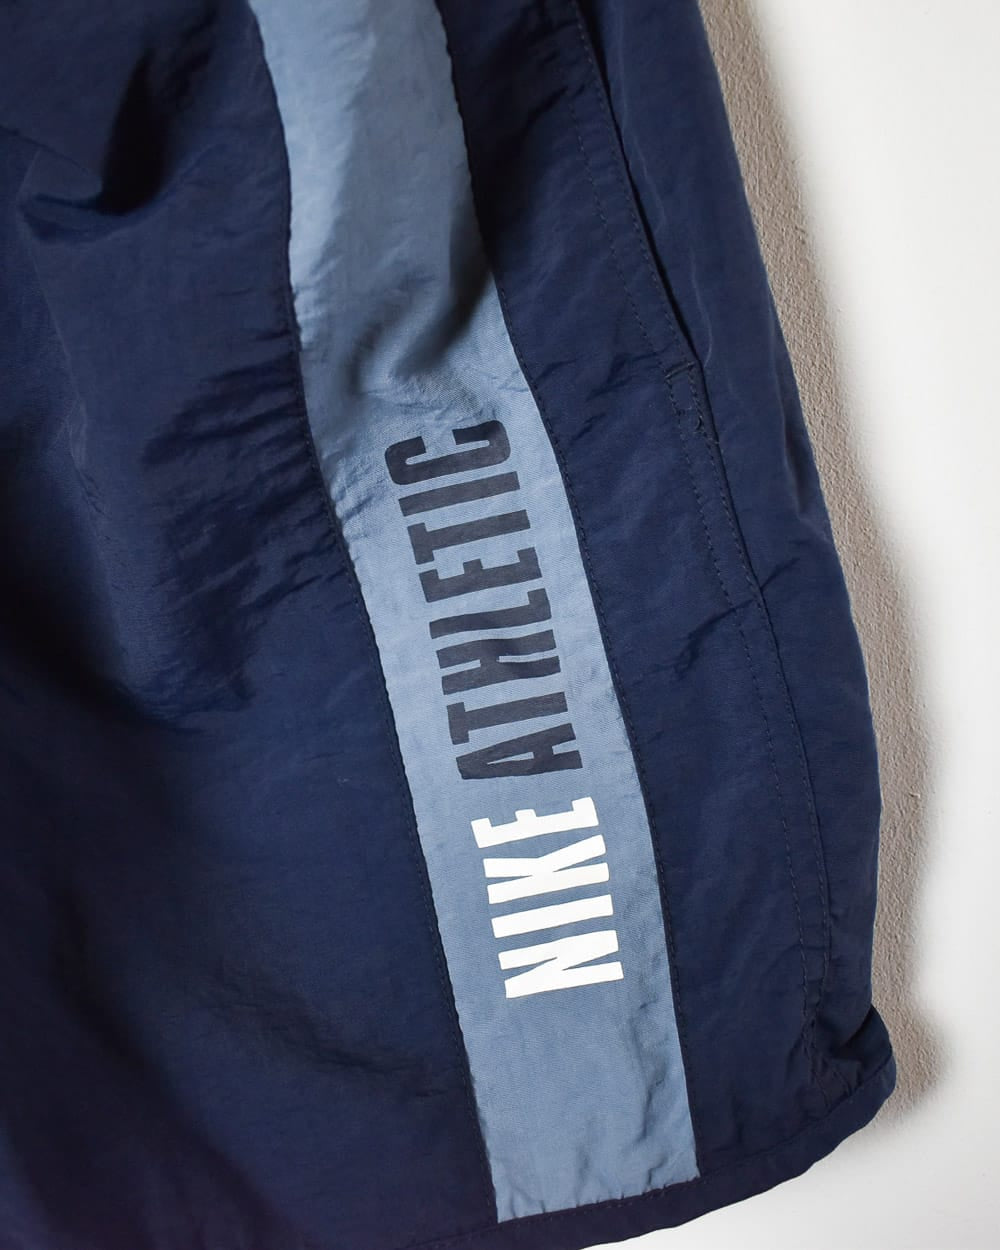 Navy Nike Athletic Mesh Shorts - Large